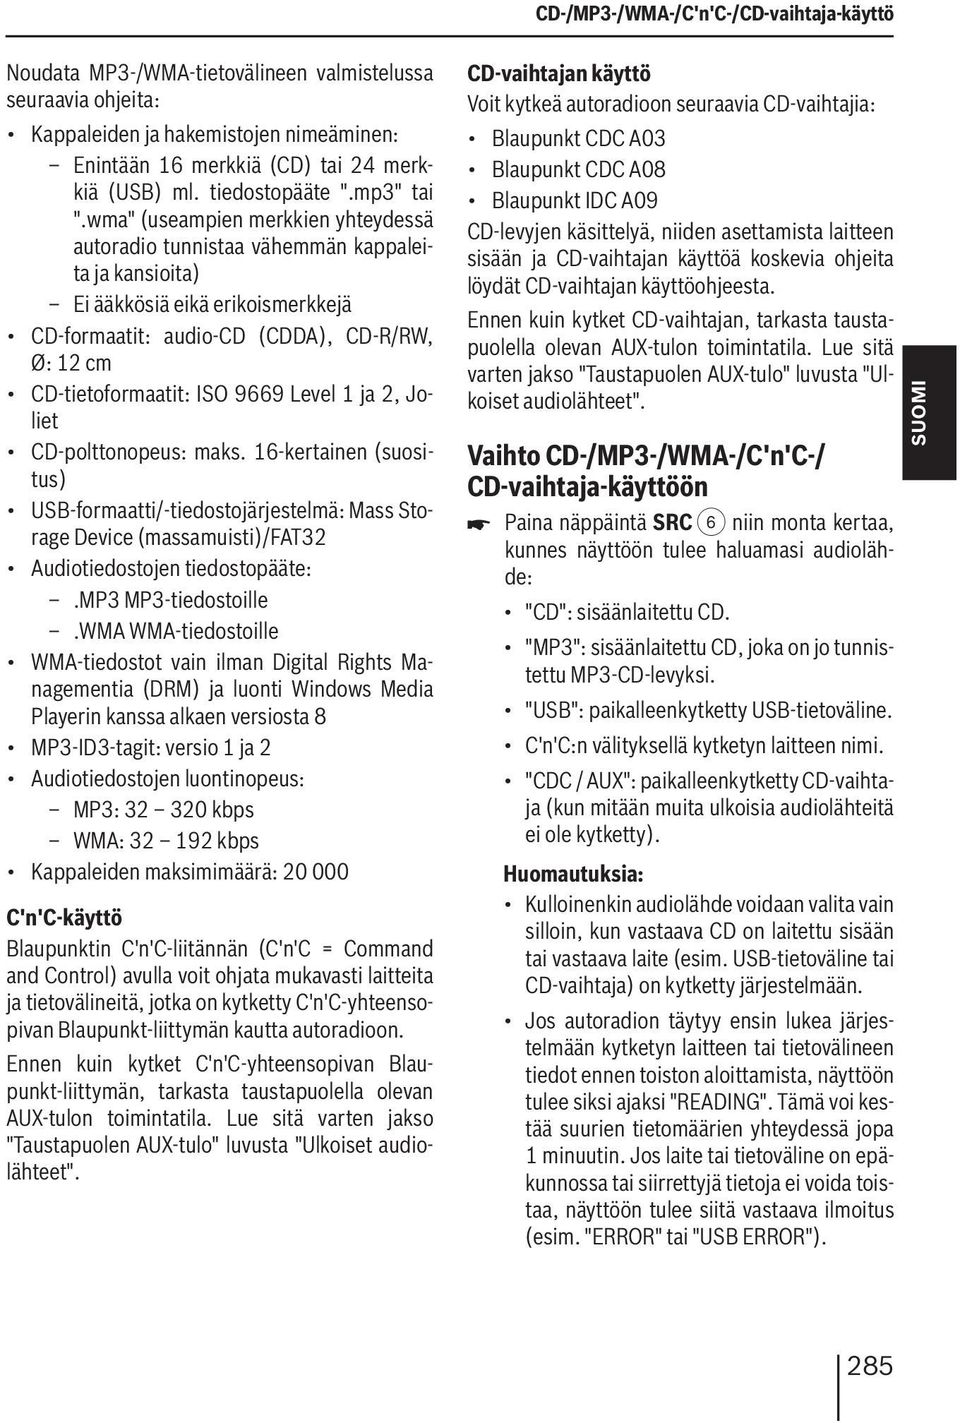 wma" (useampien merkkien yhteydessä autoradio tunnistaa vähemmän kappaleita ja kansioita) Ei ääkkösiä eikä erikoismerkkejä CD-formaatit: audio-cd (CDDA), CD-R/RW, Ø: 12 cm CD-tietoformaatit: ISO 9669